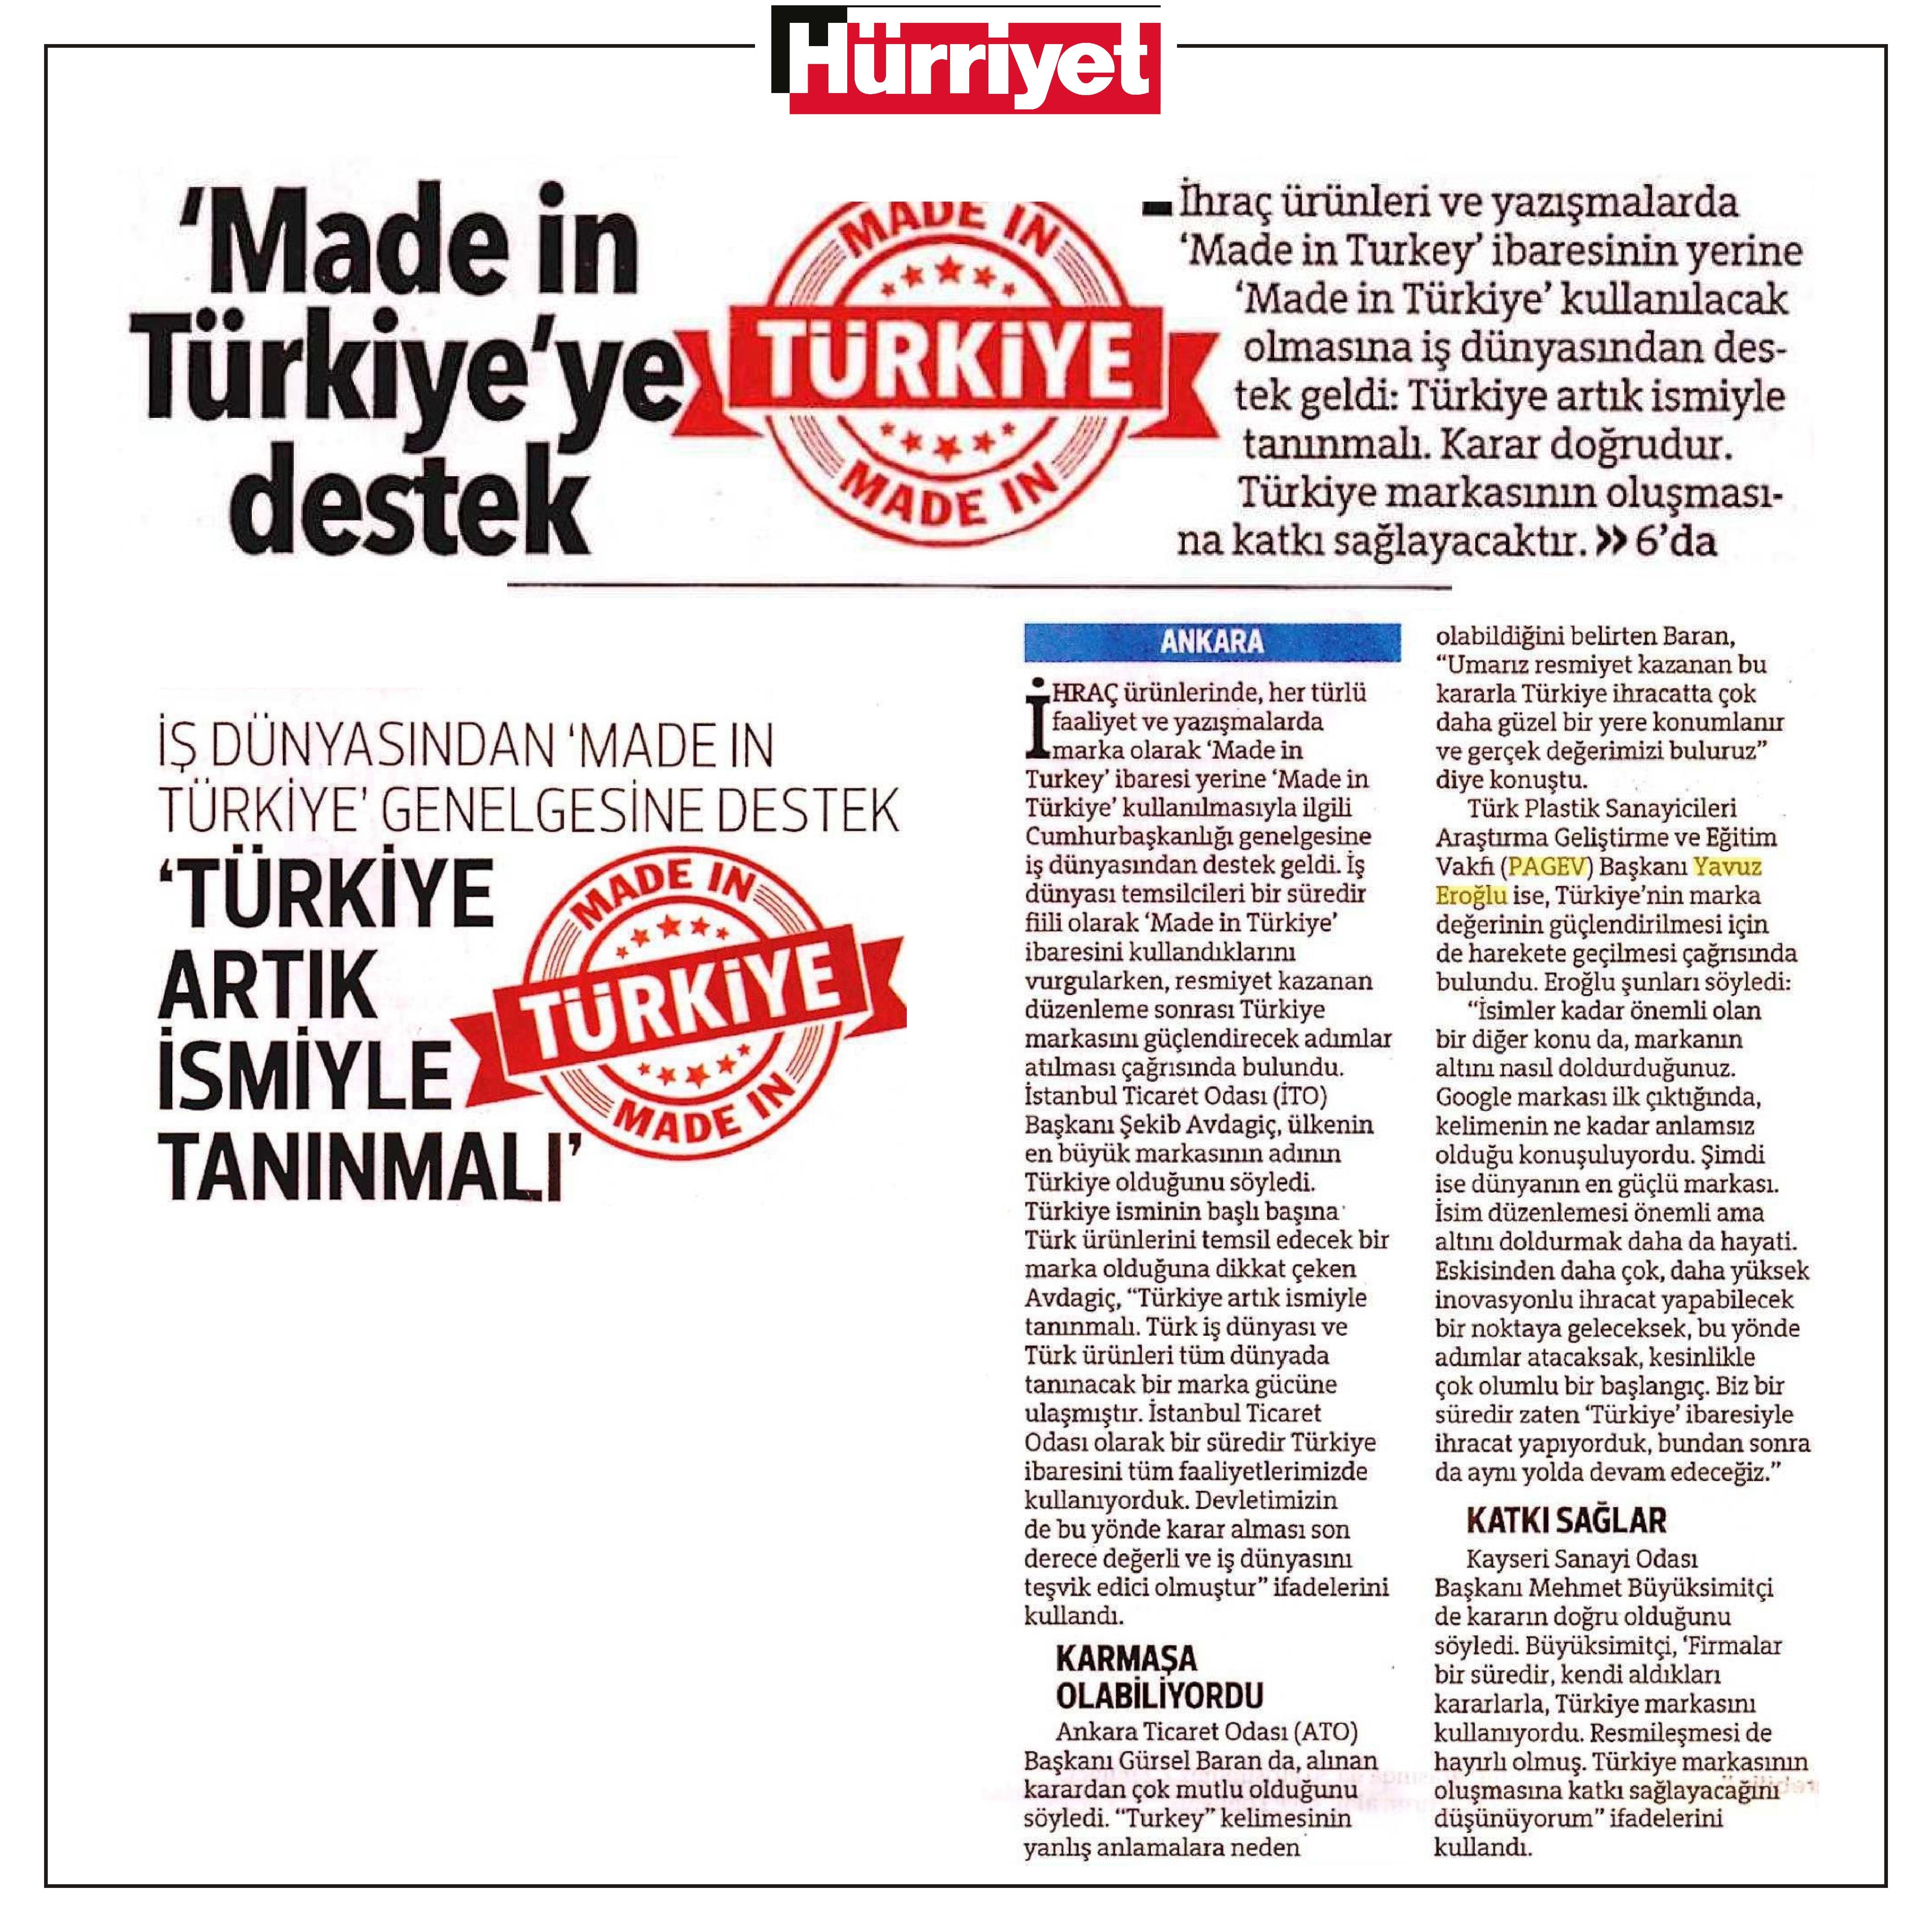 İş dünyasından ‘Made in Türkiye’ genelgesine destek: Türkiye artık ismiyle tanınmalı